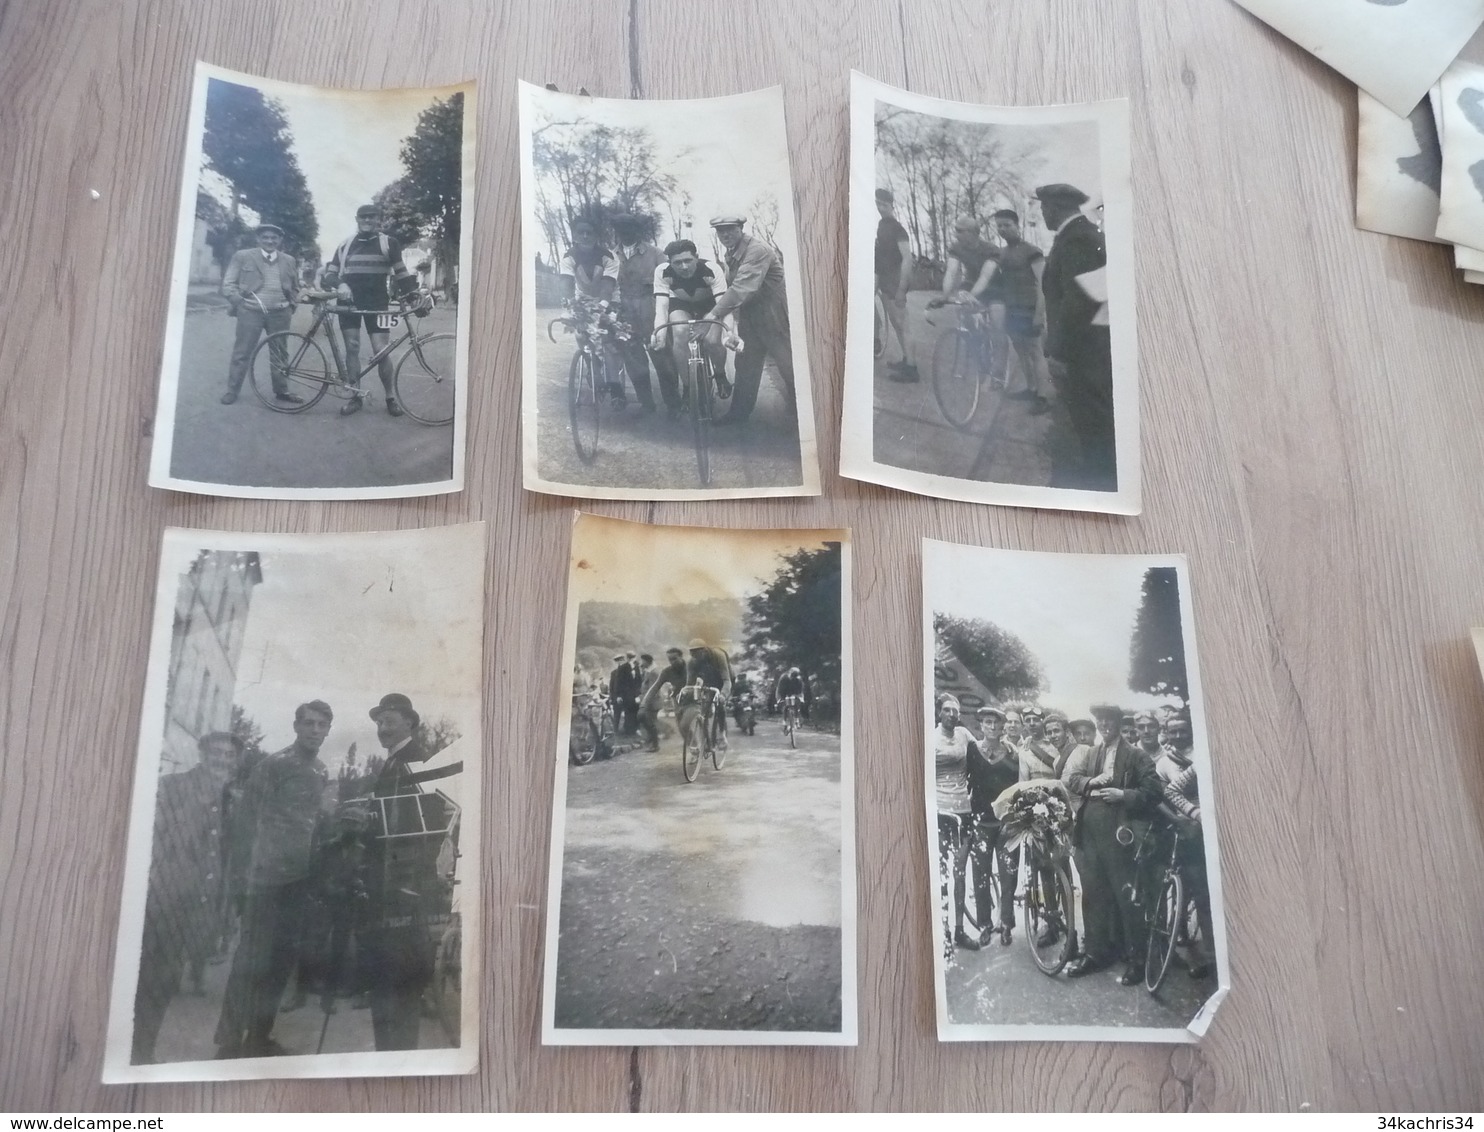 Cyclisme course cycliste région parisienne Lot 59 photos amateurs tout état adhérences au dos dont Prix Jacot